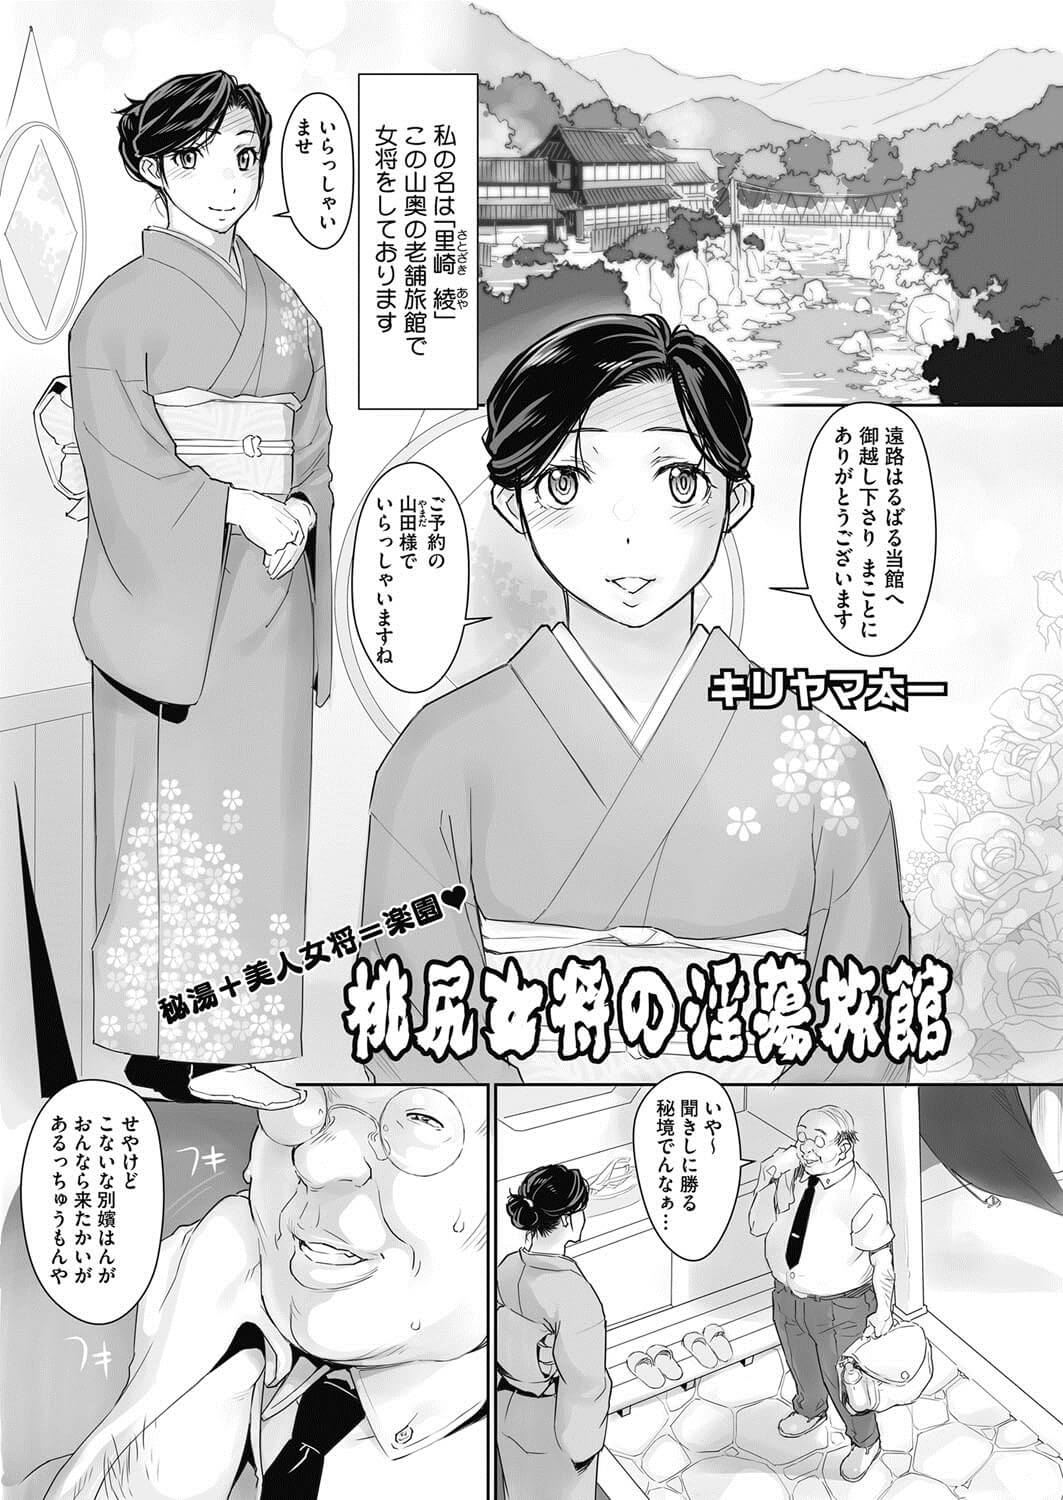 【エロ漫画】熟女の綾は旅館の女将をやっていて、和服でお客様の山田を案内していると後ろから巨乳を揉まれる。【無料 エロ同人】